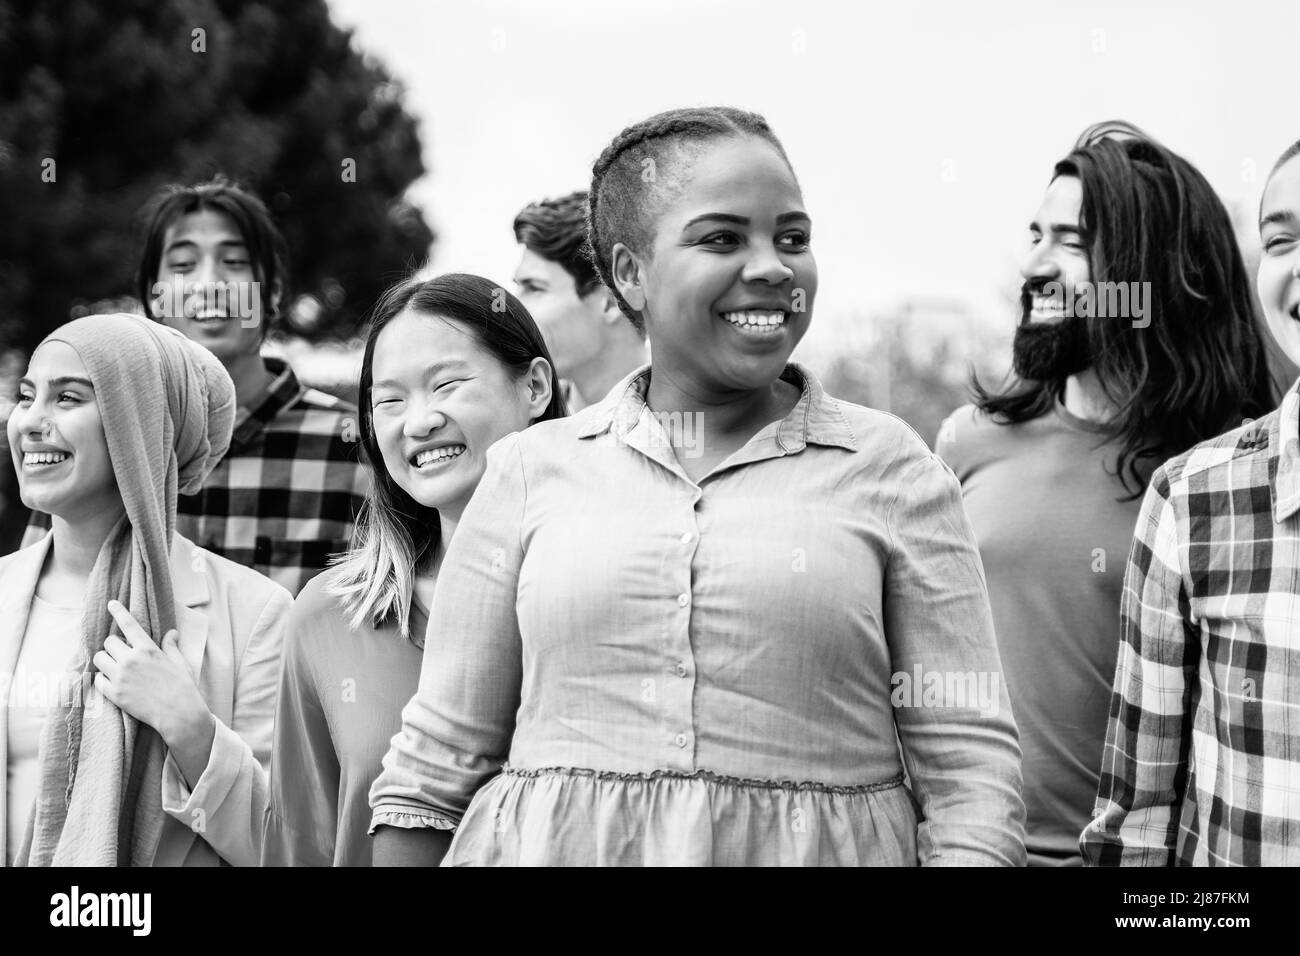 Giovani multietnici che si divertono a camminare insieme all'aperto - Focus on Asian girl face - editing in bianco e nero Foto Stock